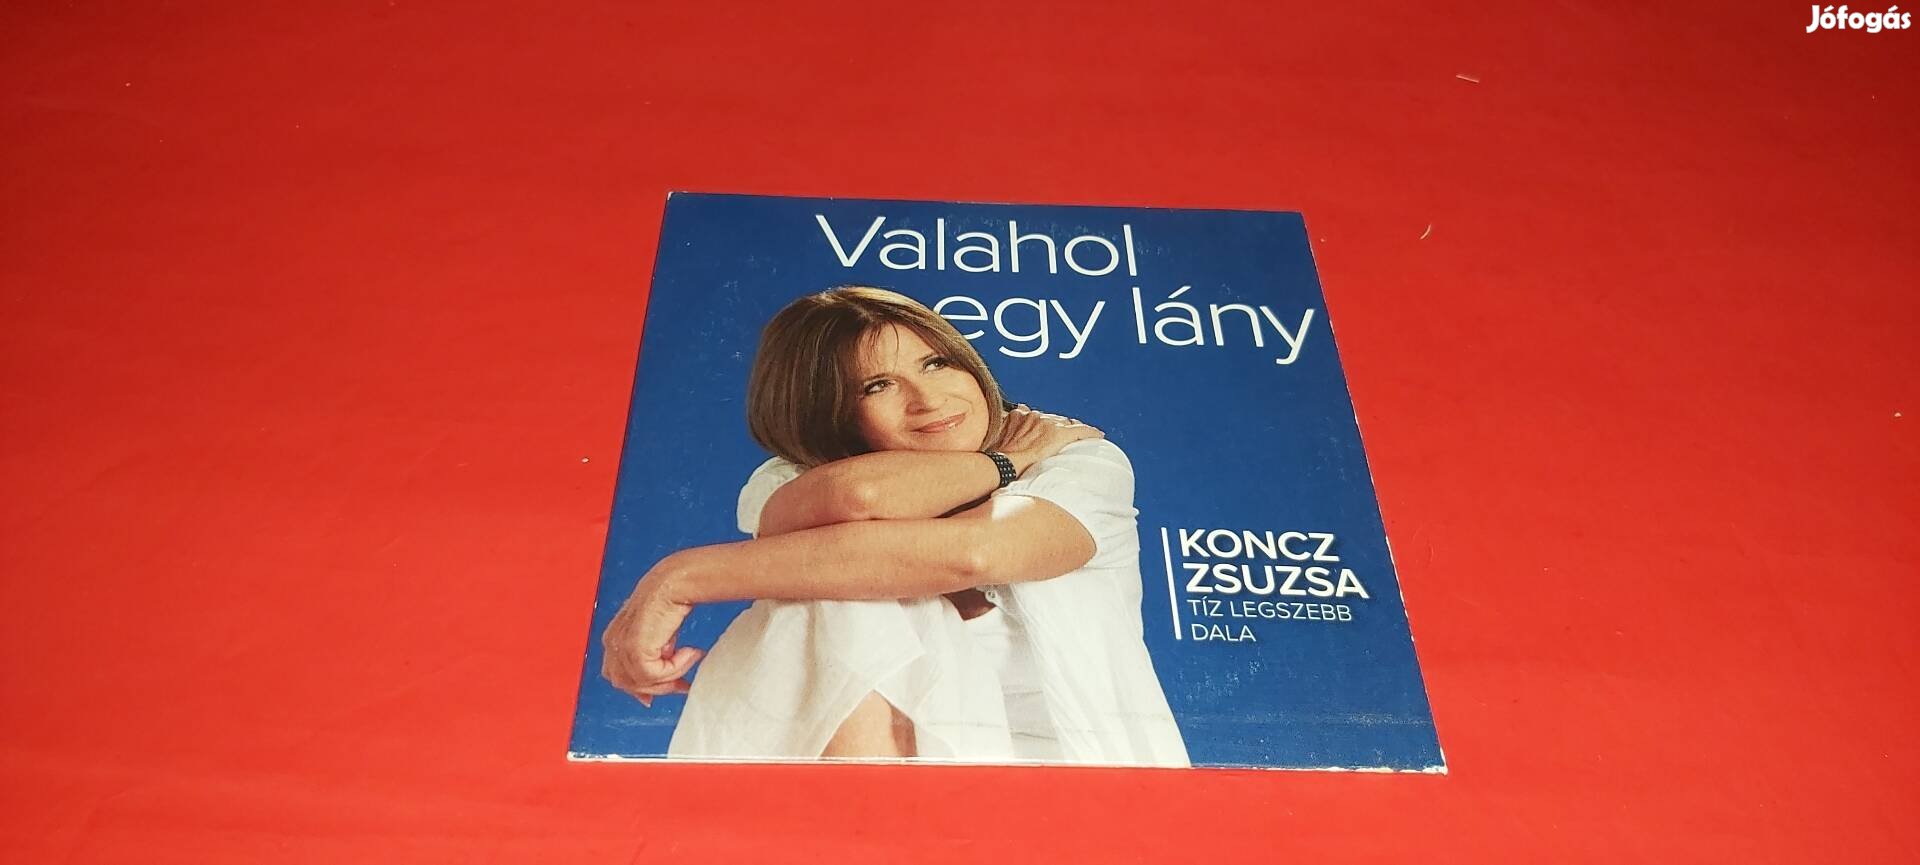 Koncz Zsuzsa Valahol egy lány Cd 2013